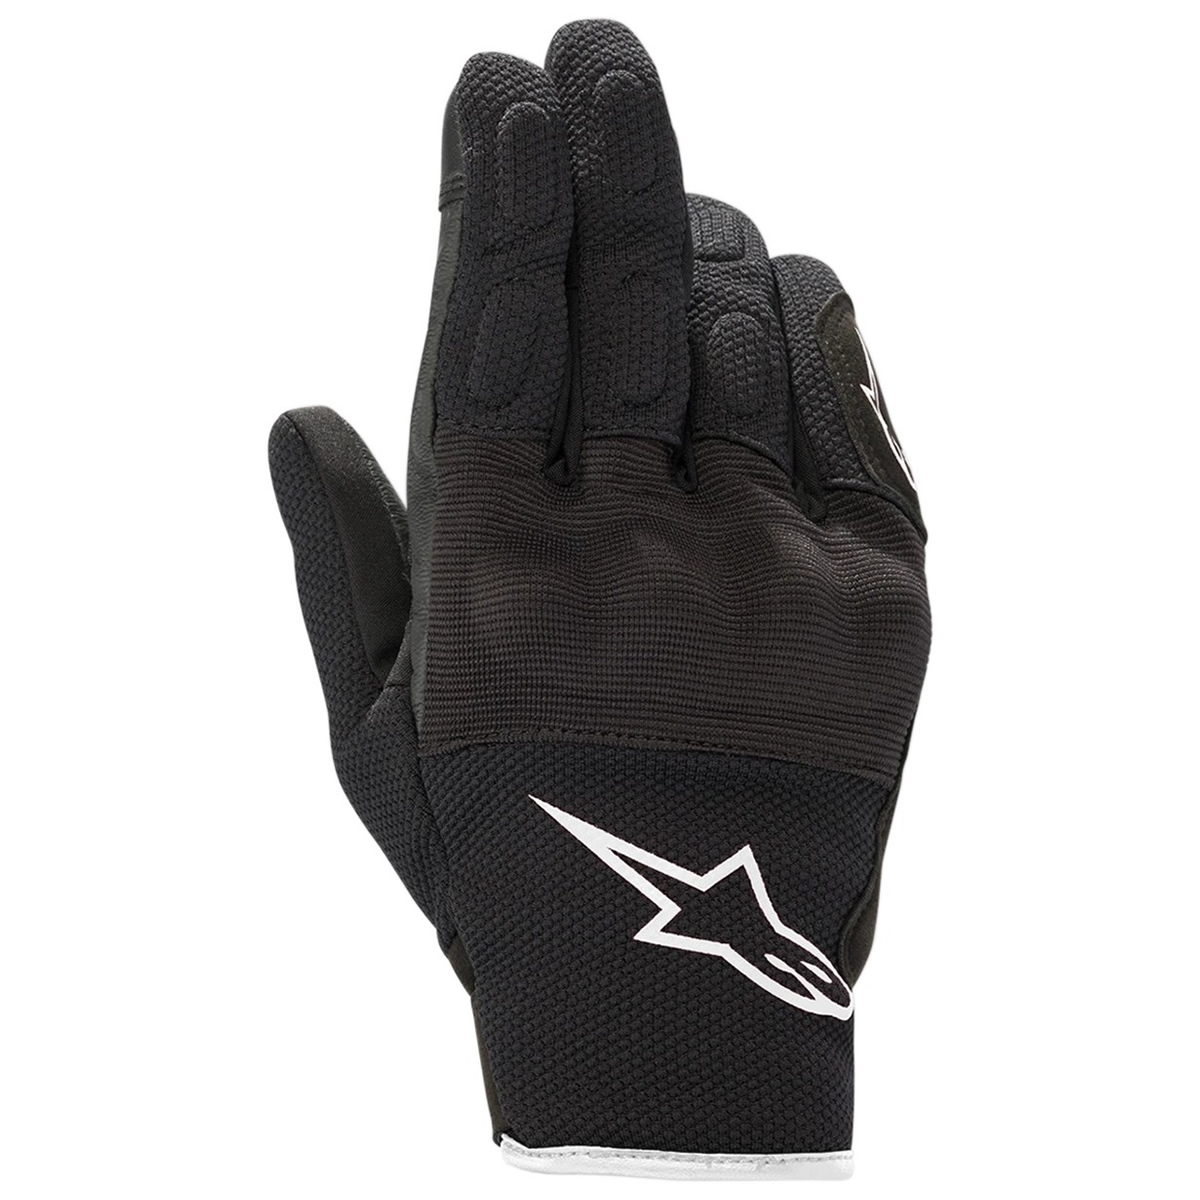 Alpinestars Handschuhe Stella S Max Drystar®, schwarz-weiß